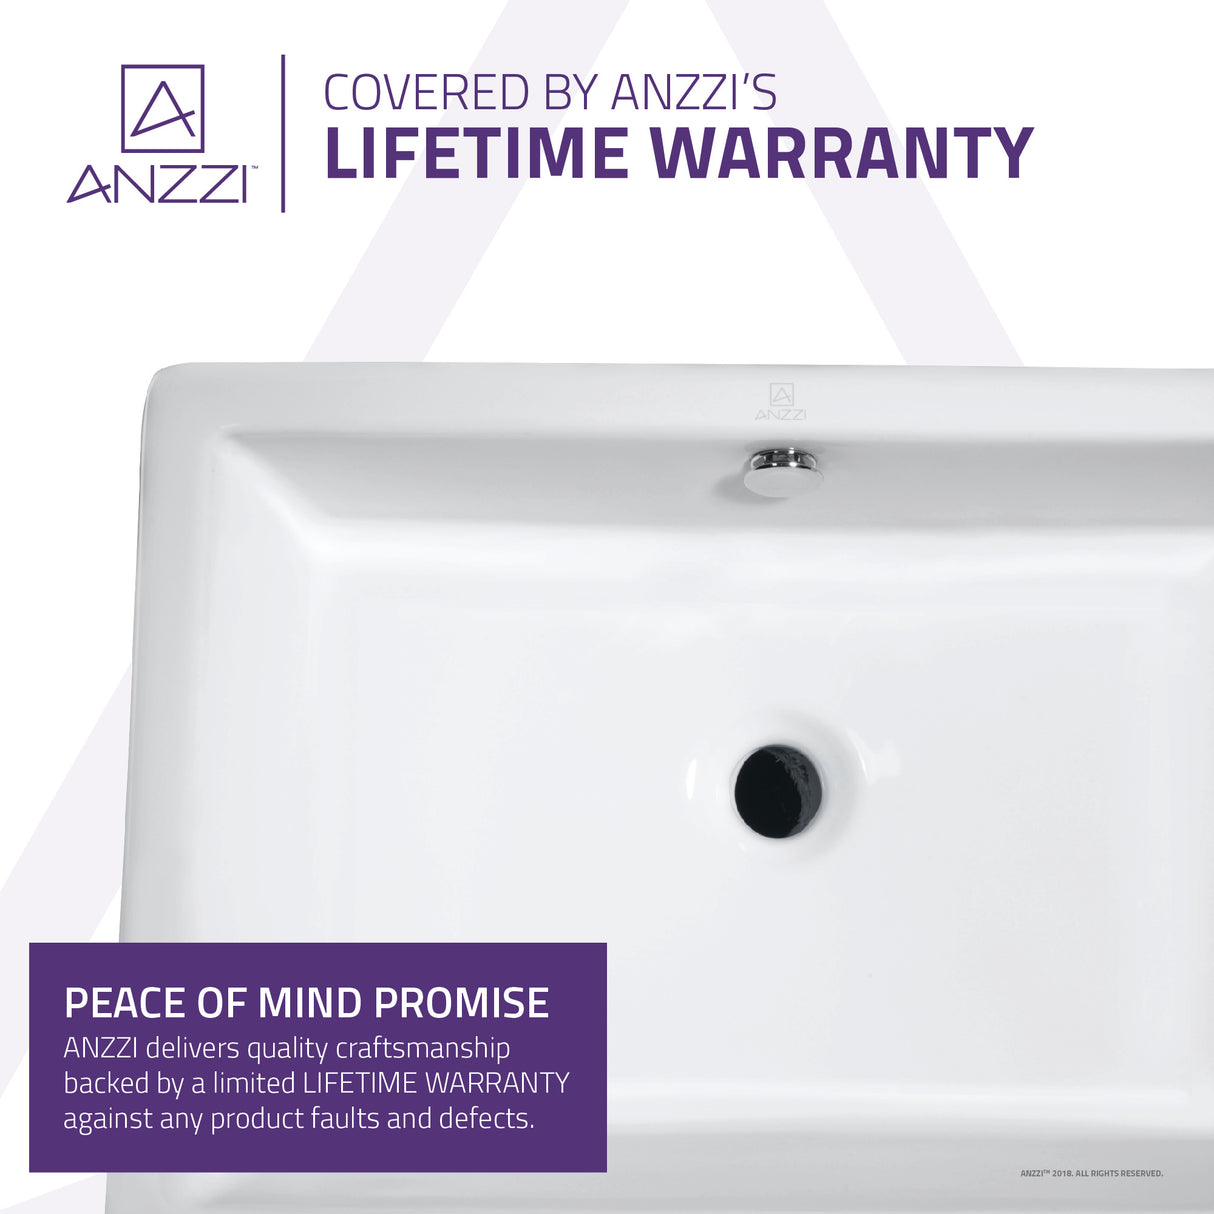 ANZZI LS-AZ122 Deux Series Ceramic Vessel Sink in White